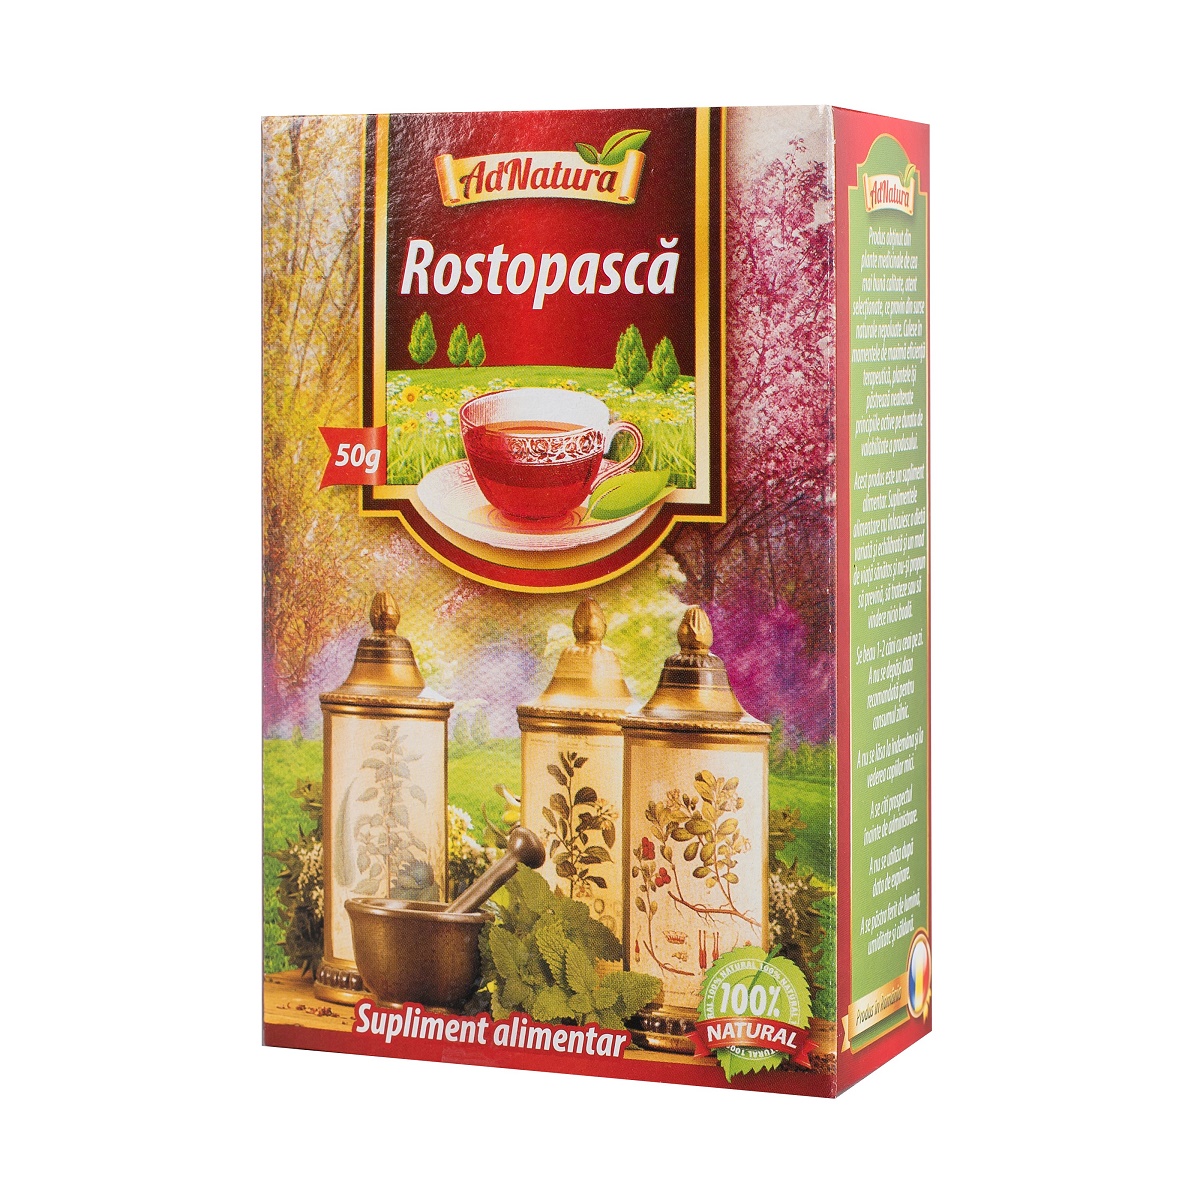 Ceai de Rostopasca, 50 g, AdNatura